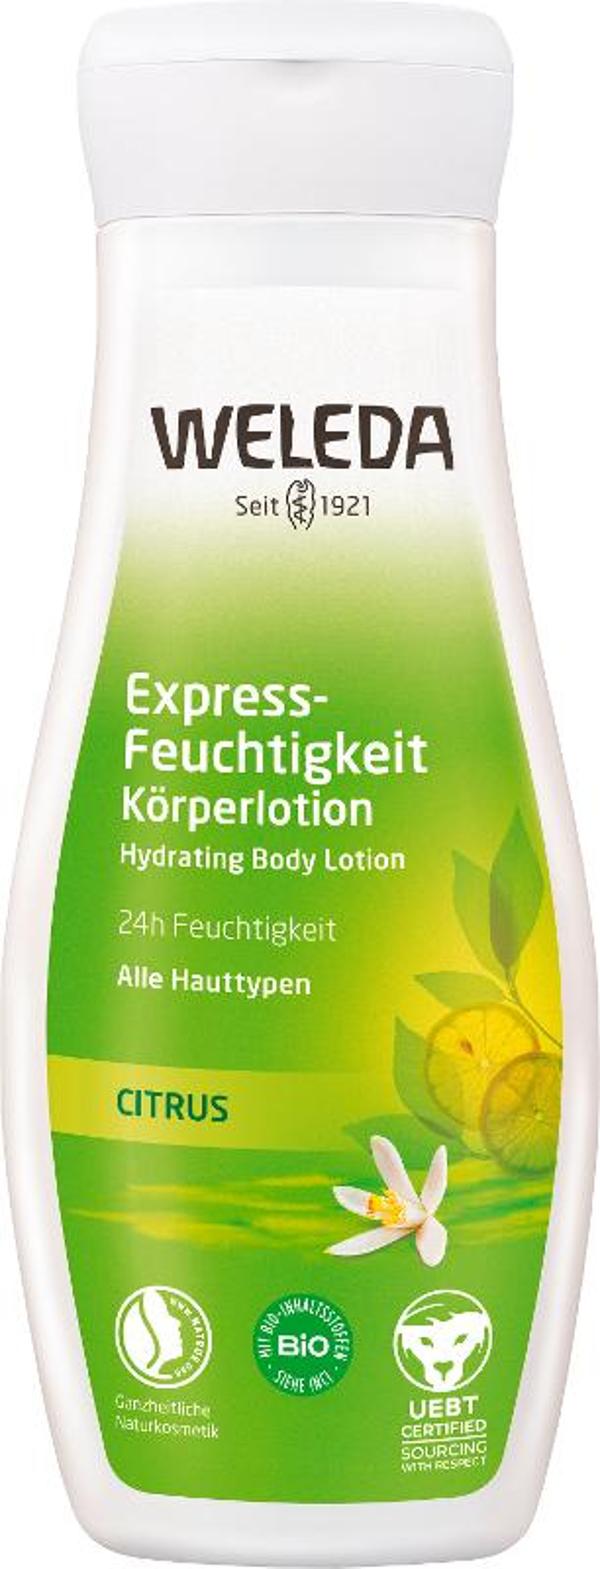 Produktfoto zu Citrus Express-Feuchtigkeit Körperlotion